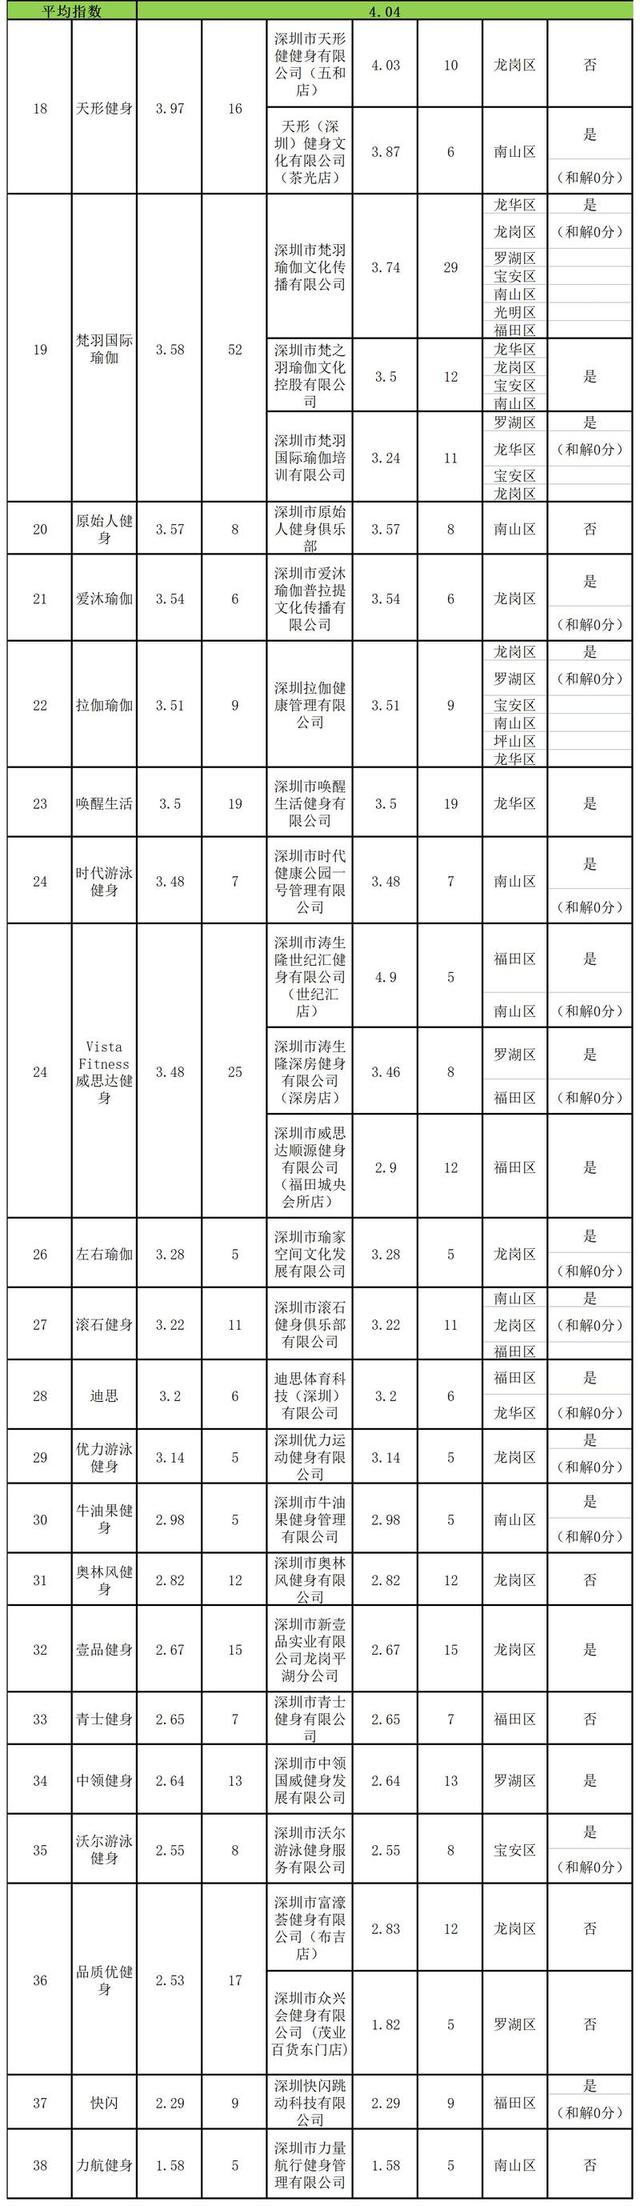 深圳市消费者委员会发布健身行业消费评价指数排行榜